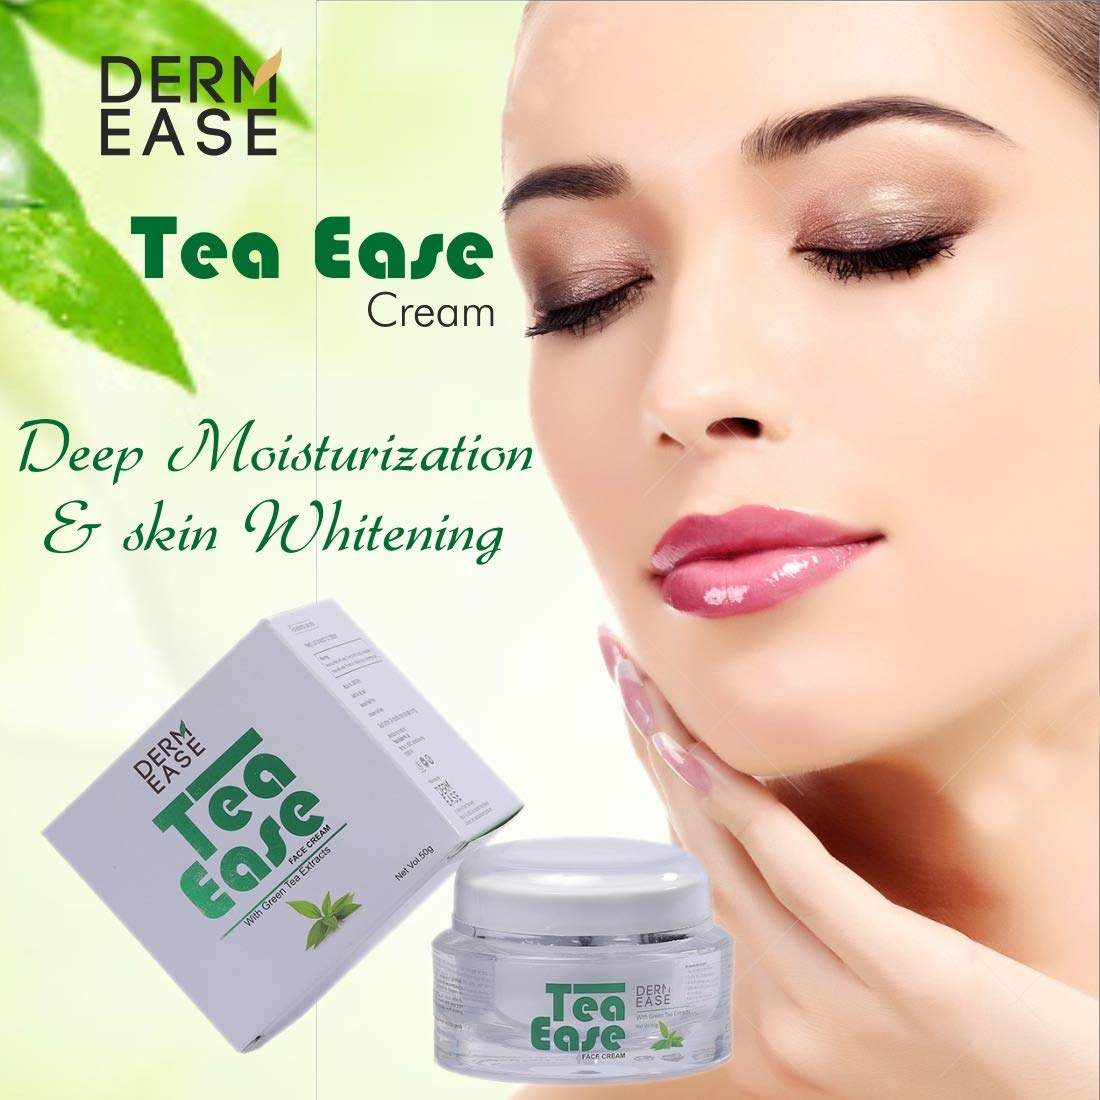 DERM EASE Tea Ease Green Tea Face Cream